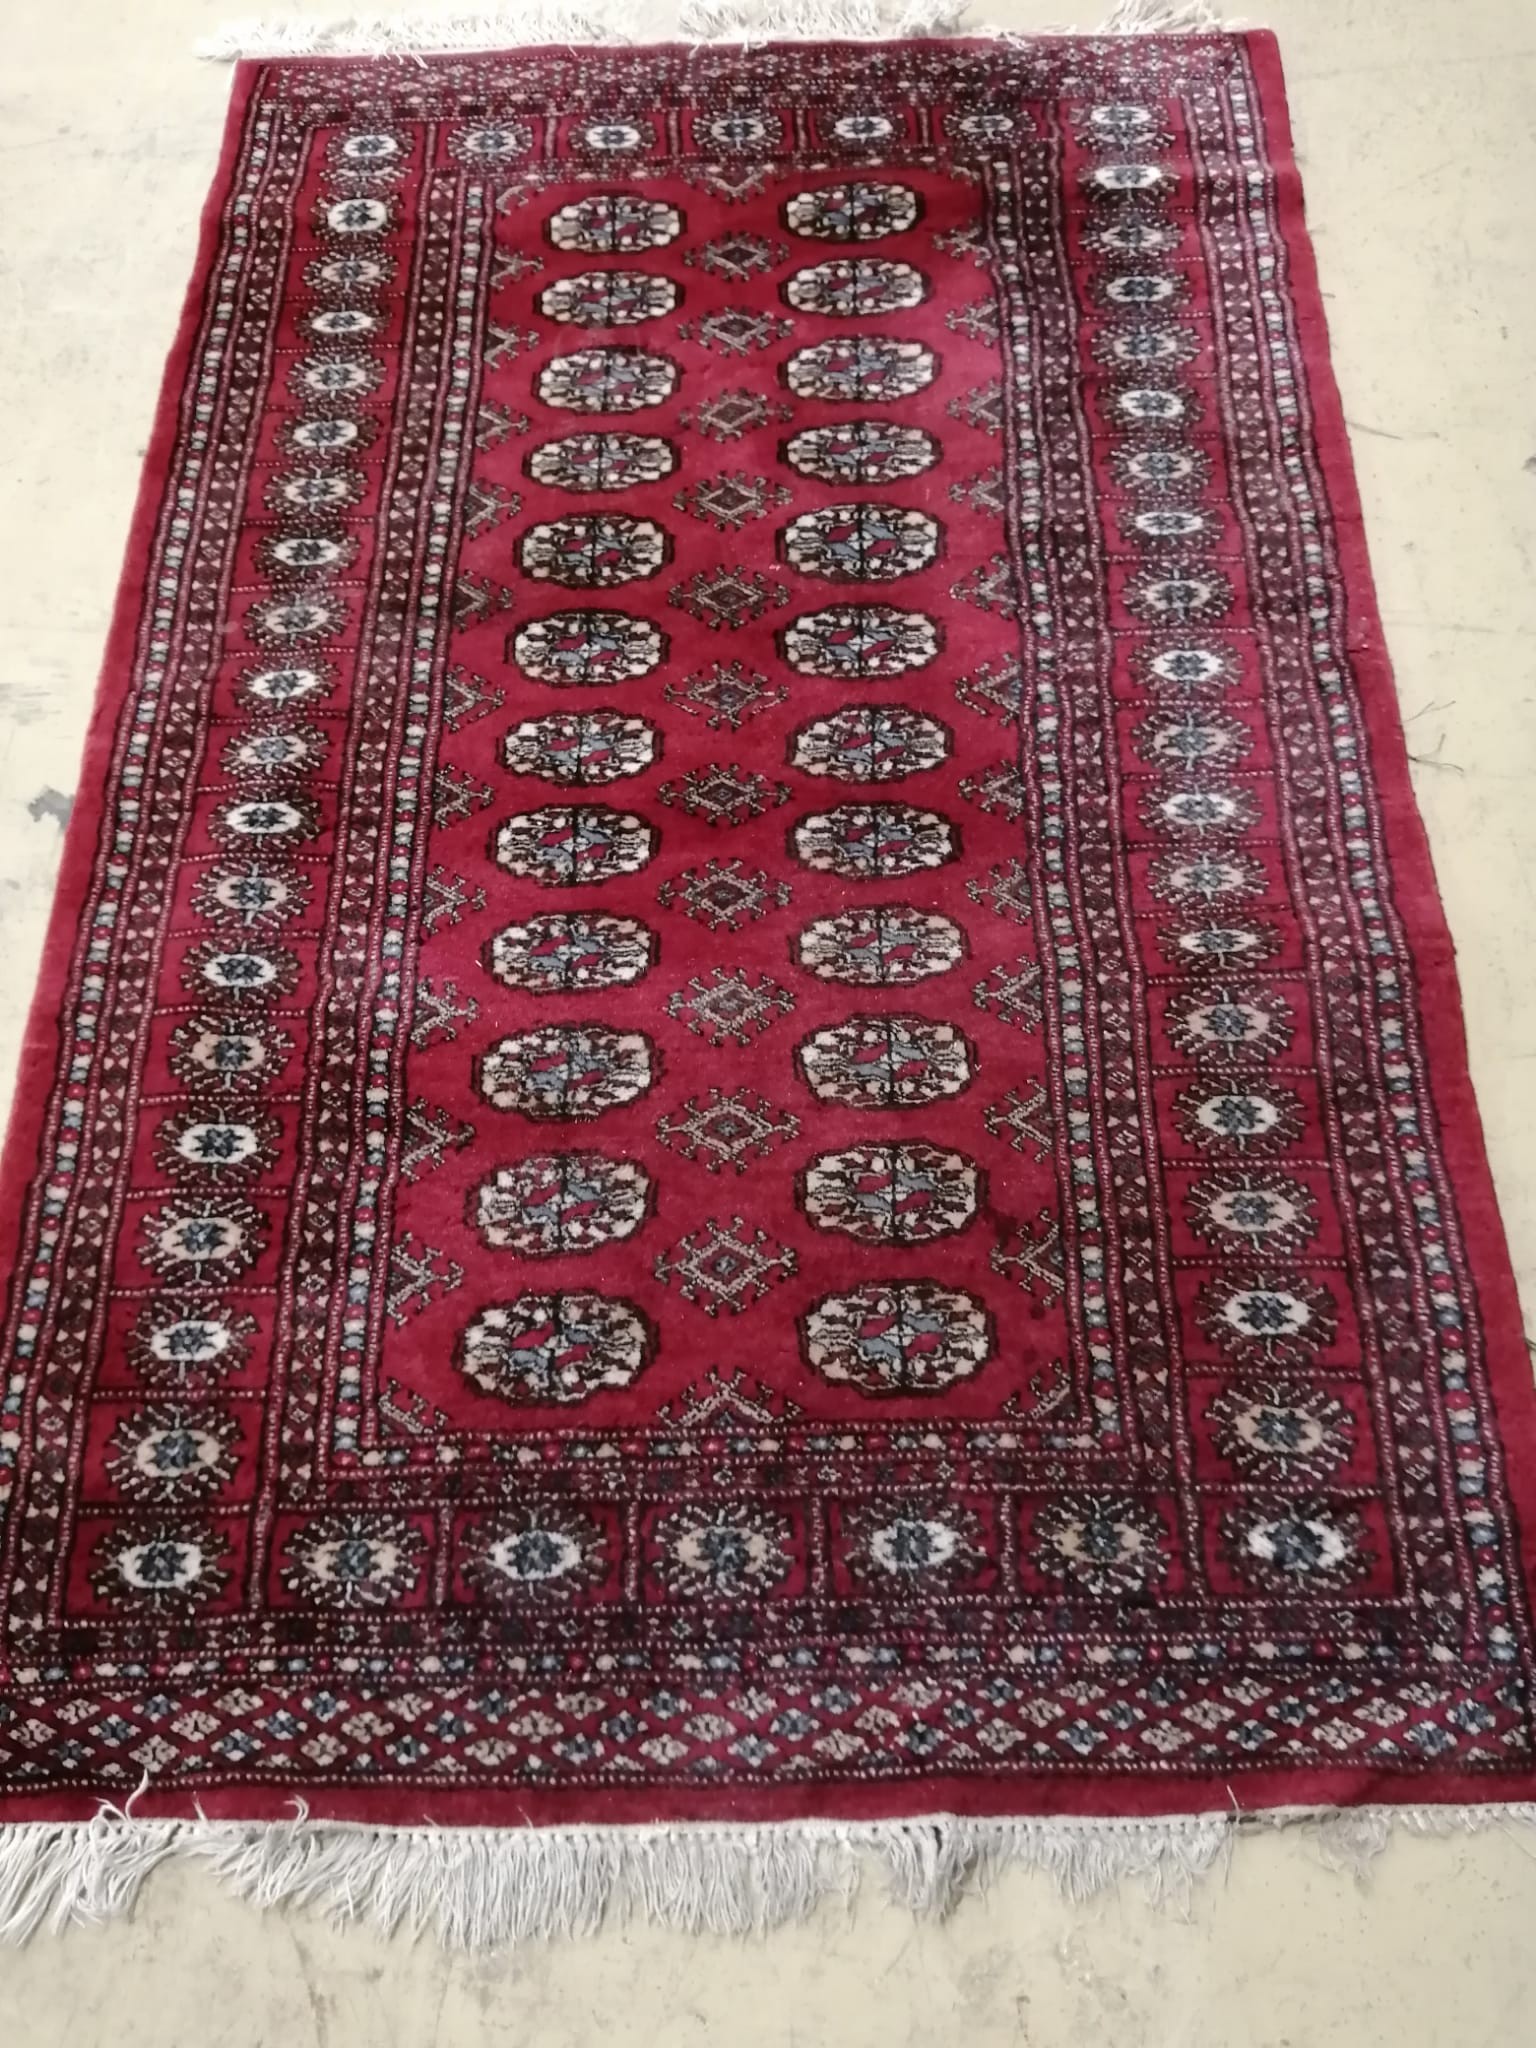 A Bokhara rug, 148 x 96cm